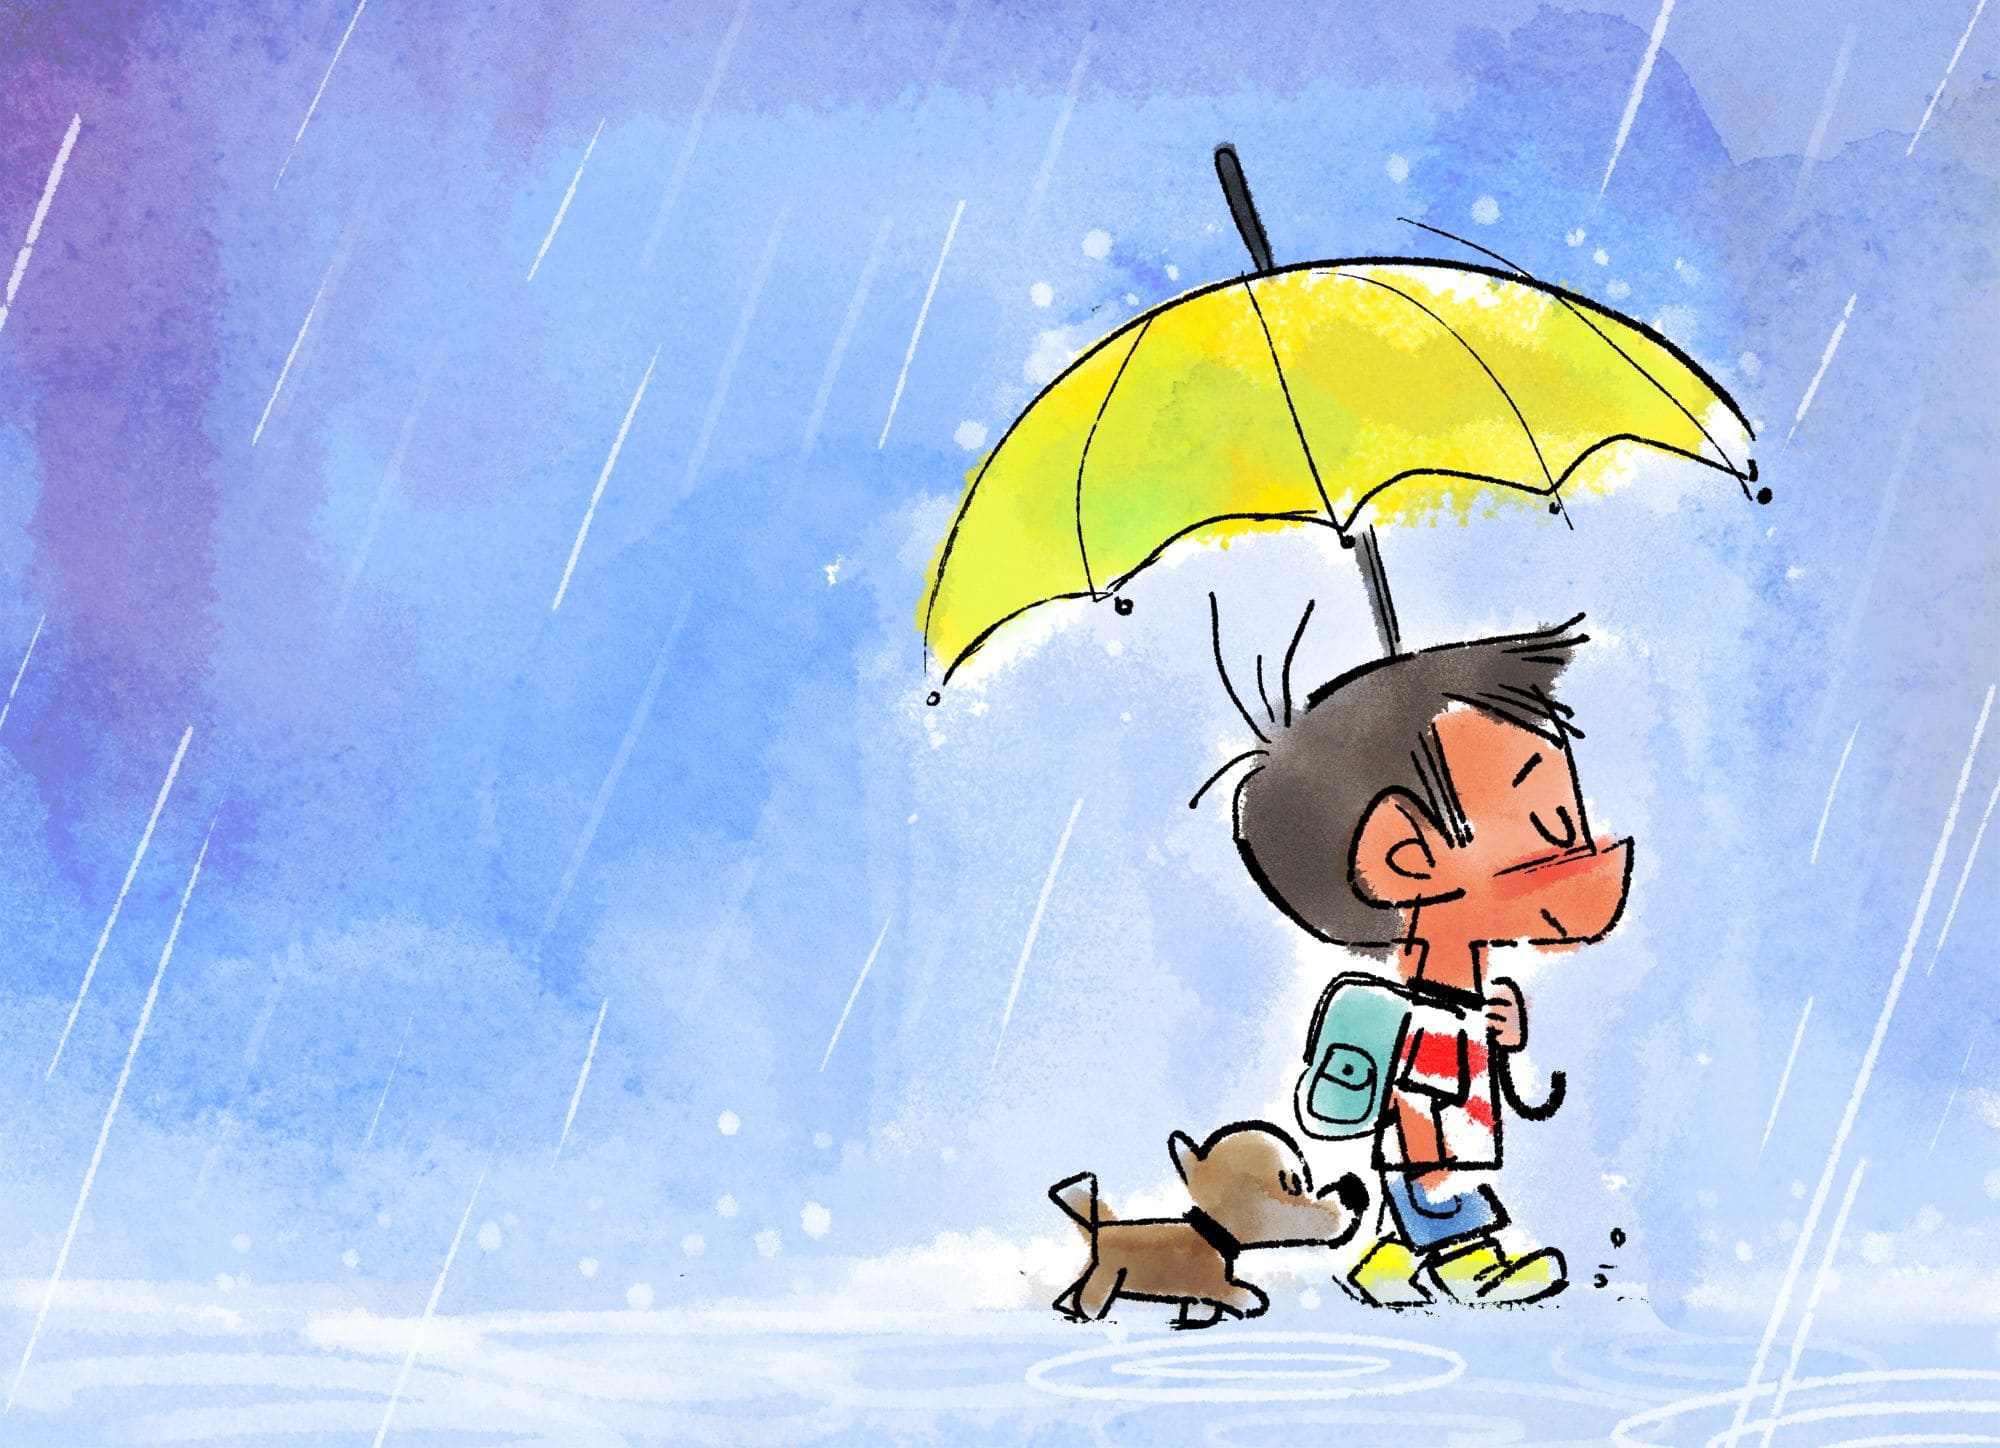 It is raining all day. Идет дождь картинки для детей. Дождь картинки Рисованные для детей. Человек под дождем рисунок.